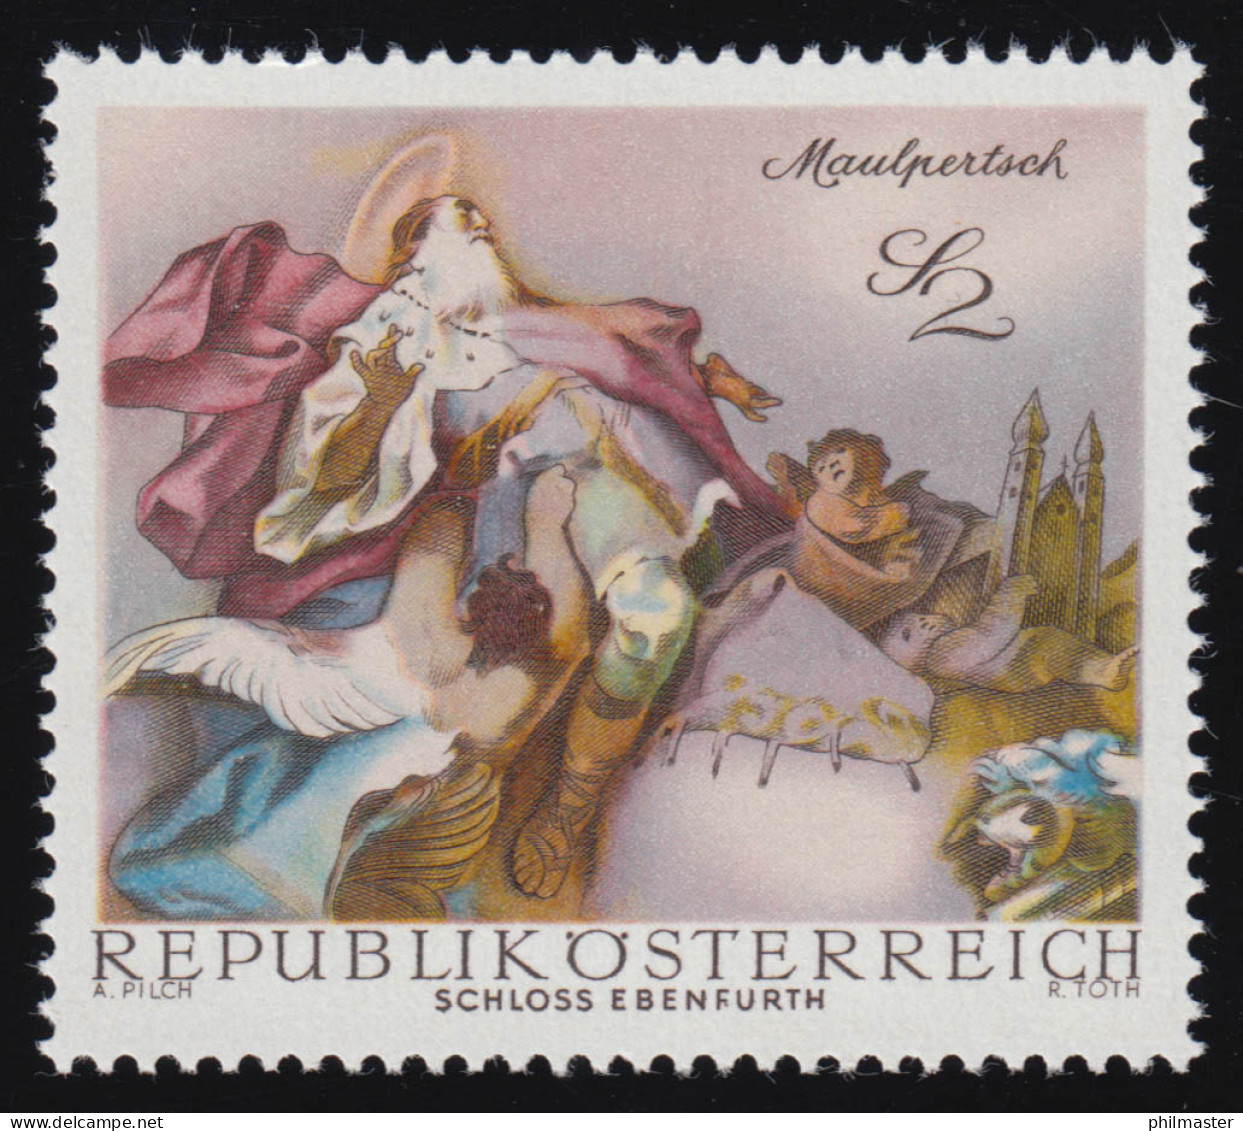 1282 Barocke Fresken, Apotheose Hl. Leopold Schloss Ebenfurth 2 S, Postfrisch ** - Unused Stamps